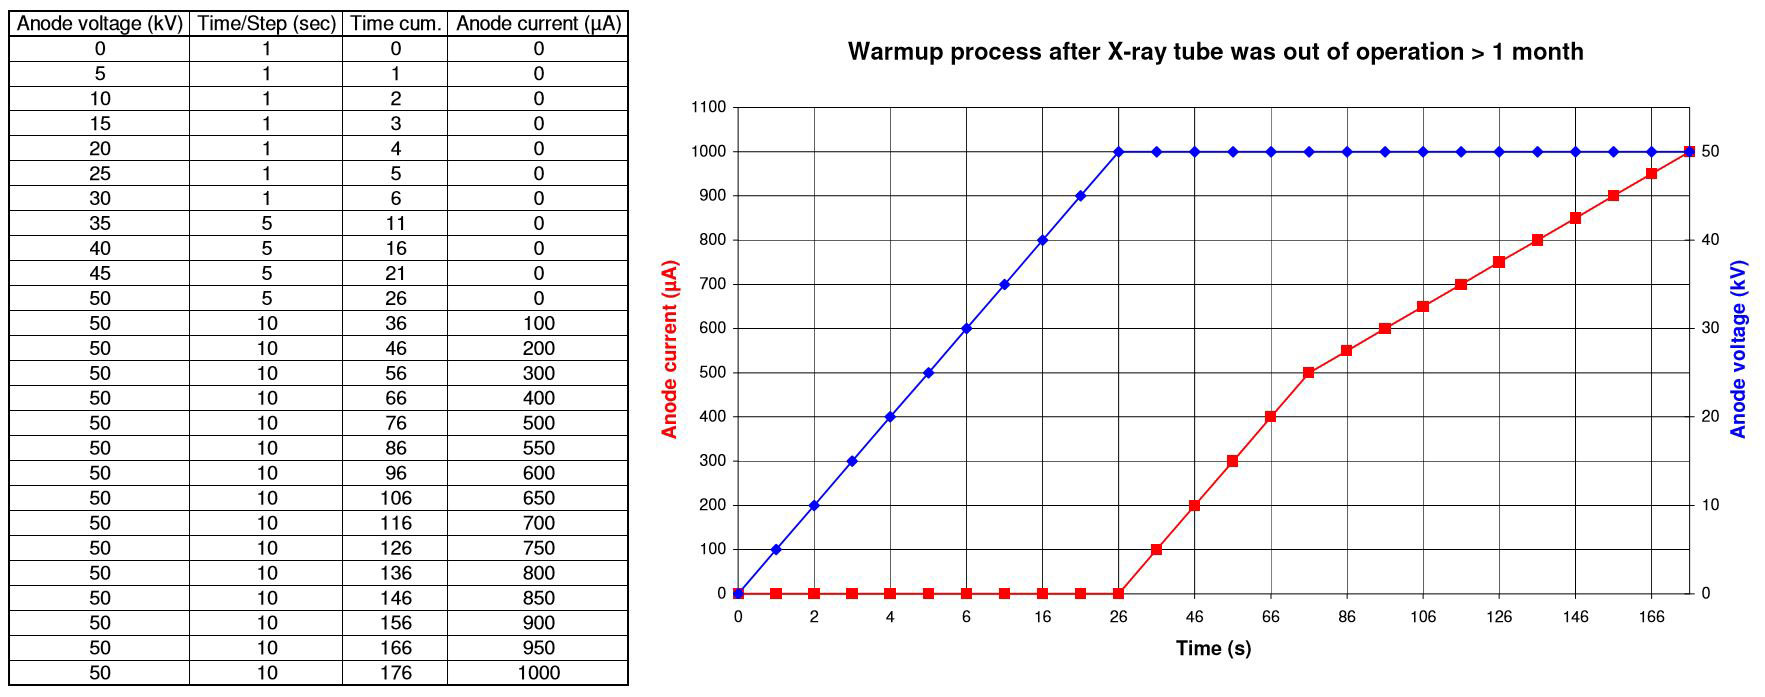 WarmUp Prozesse für 50kV Röntgenquellen außer Betrieb > 1 Monat